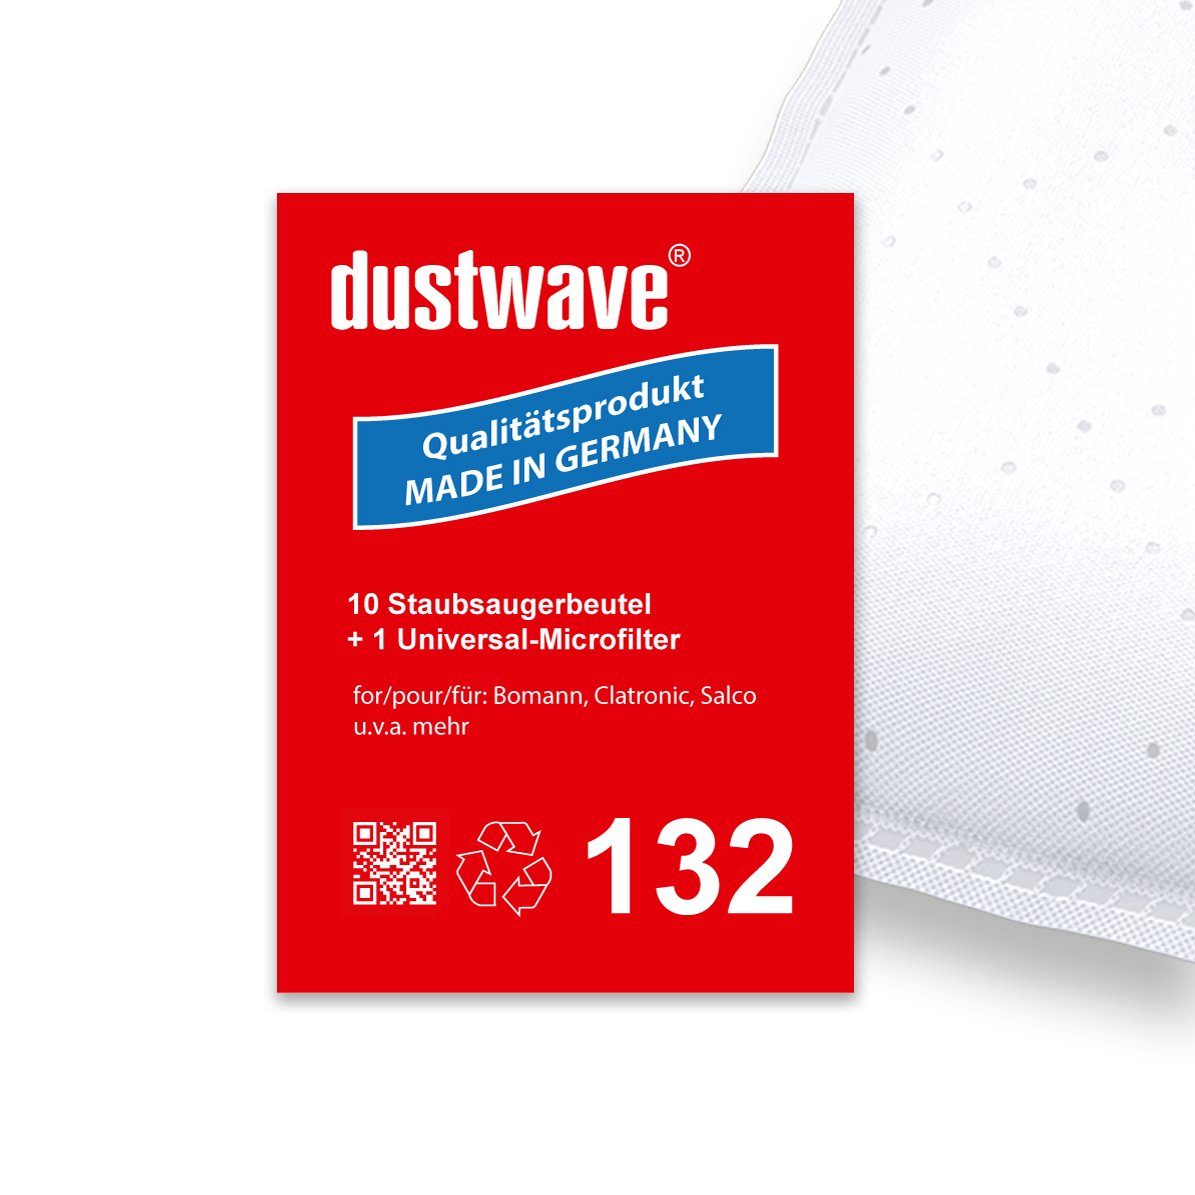 Dustwave Staubsaugerbeutel Sparpack, passend für Apollo Home Easy Clean, 10 St., Sparpack, 10 Staubsaugerbeutel + 1 Hepa-Filter (ca. 15x15cm - zuschneidbar)